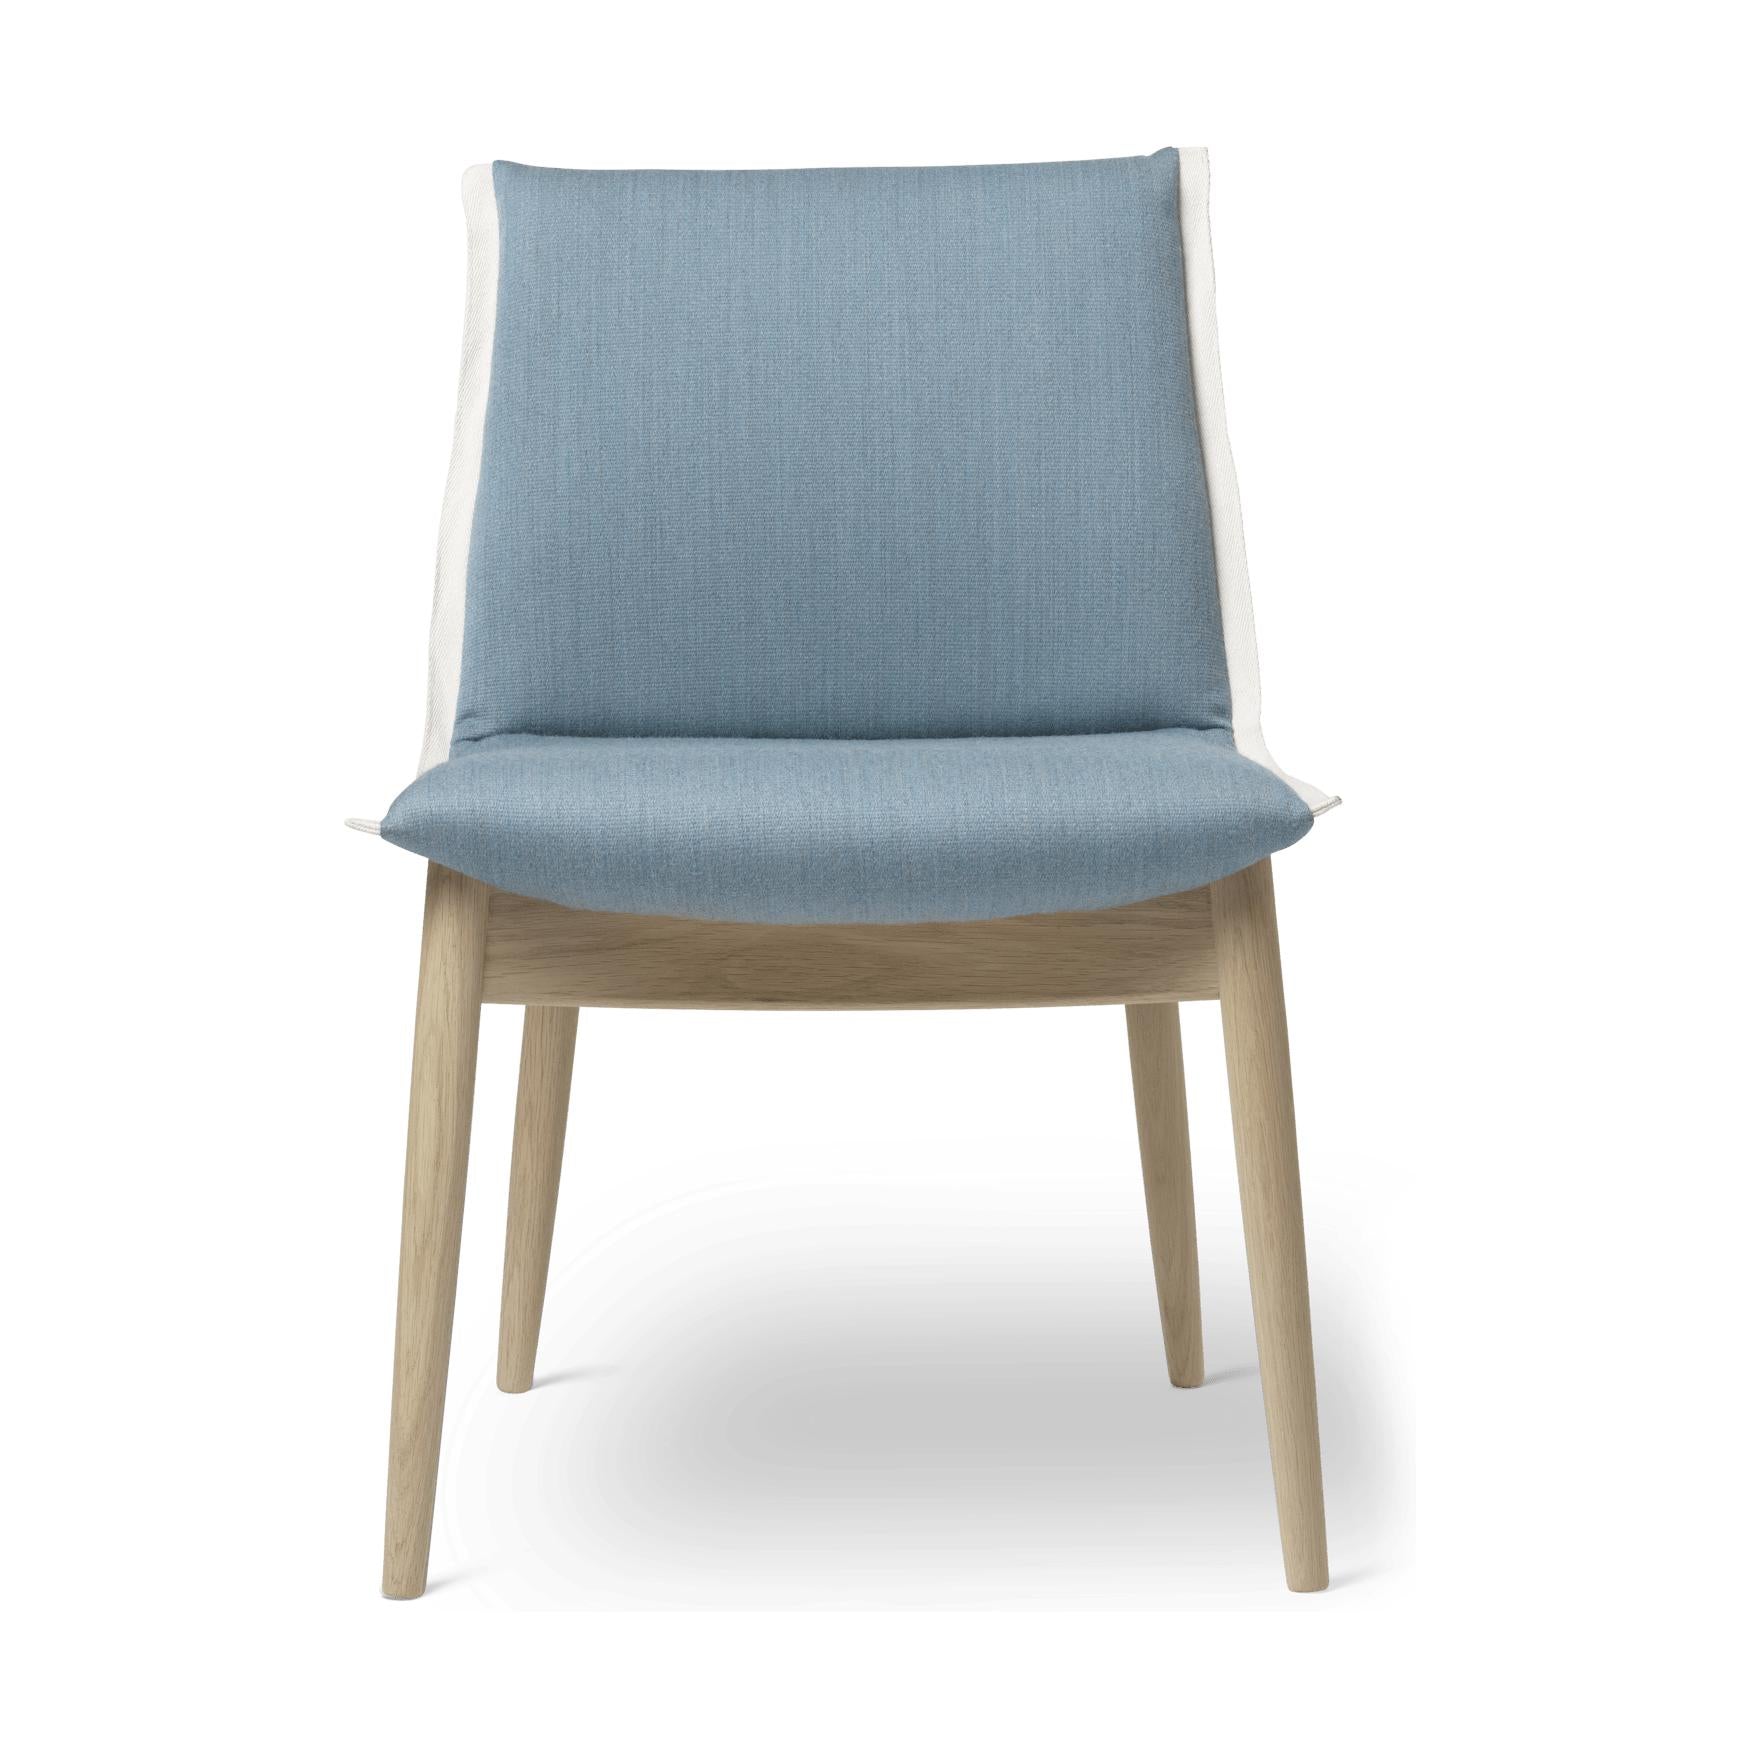 Carl Hansen E004 Embrace Chair, White Oiled Oak, Light Blue Stoff